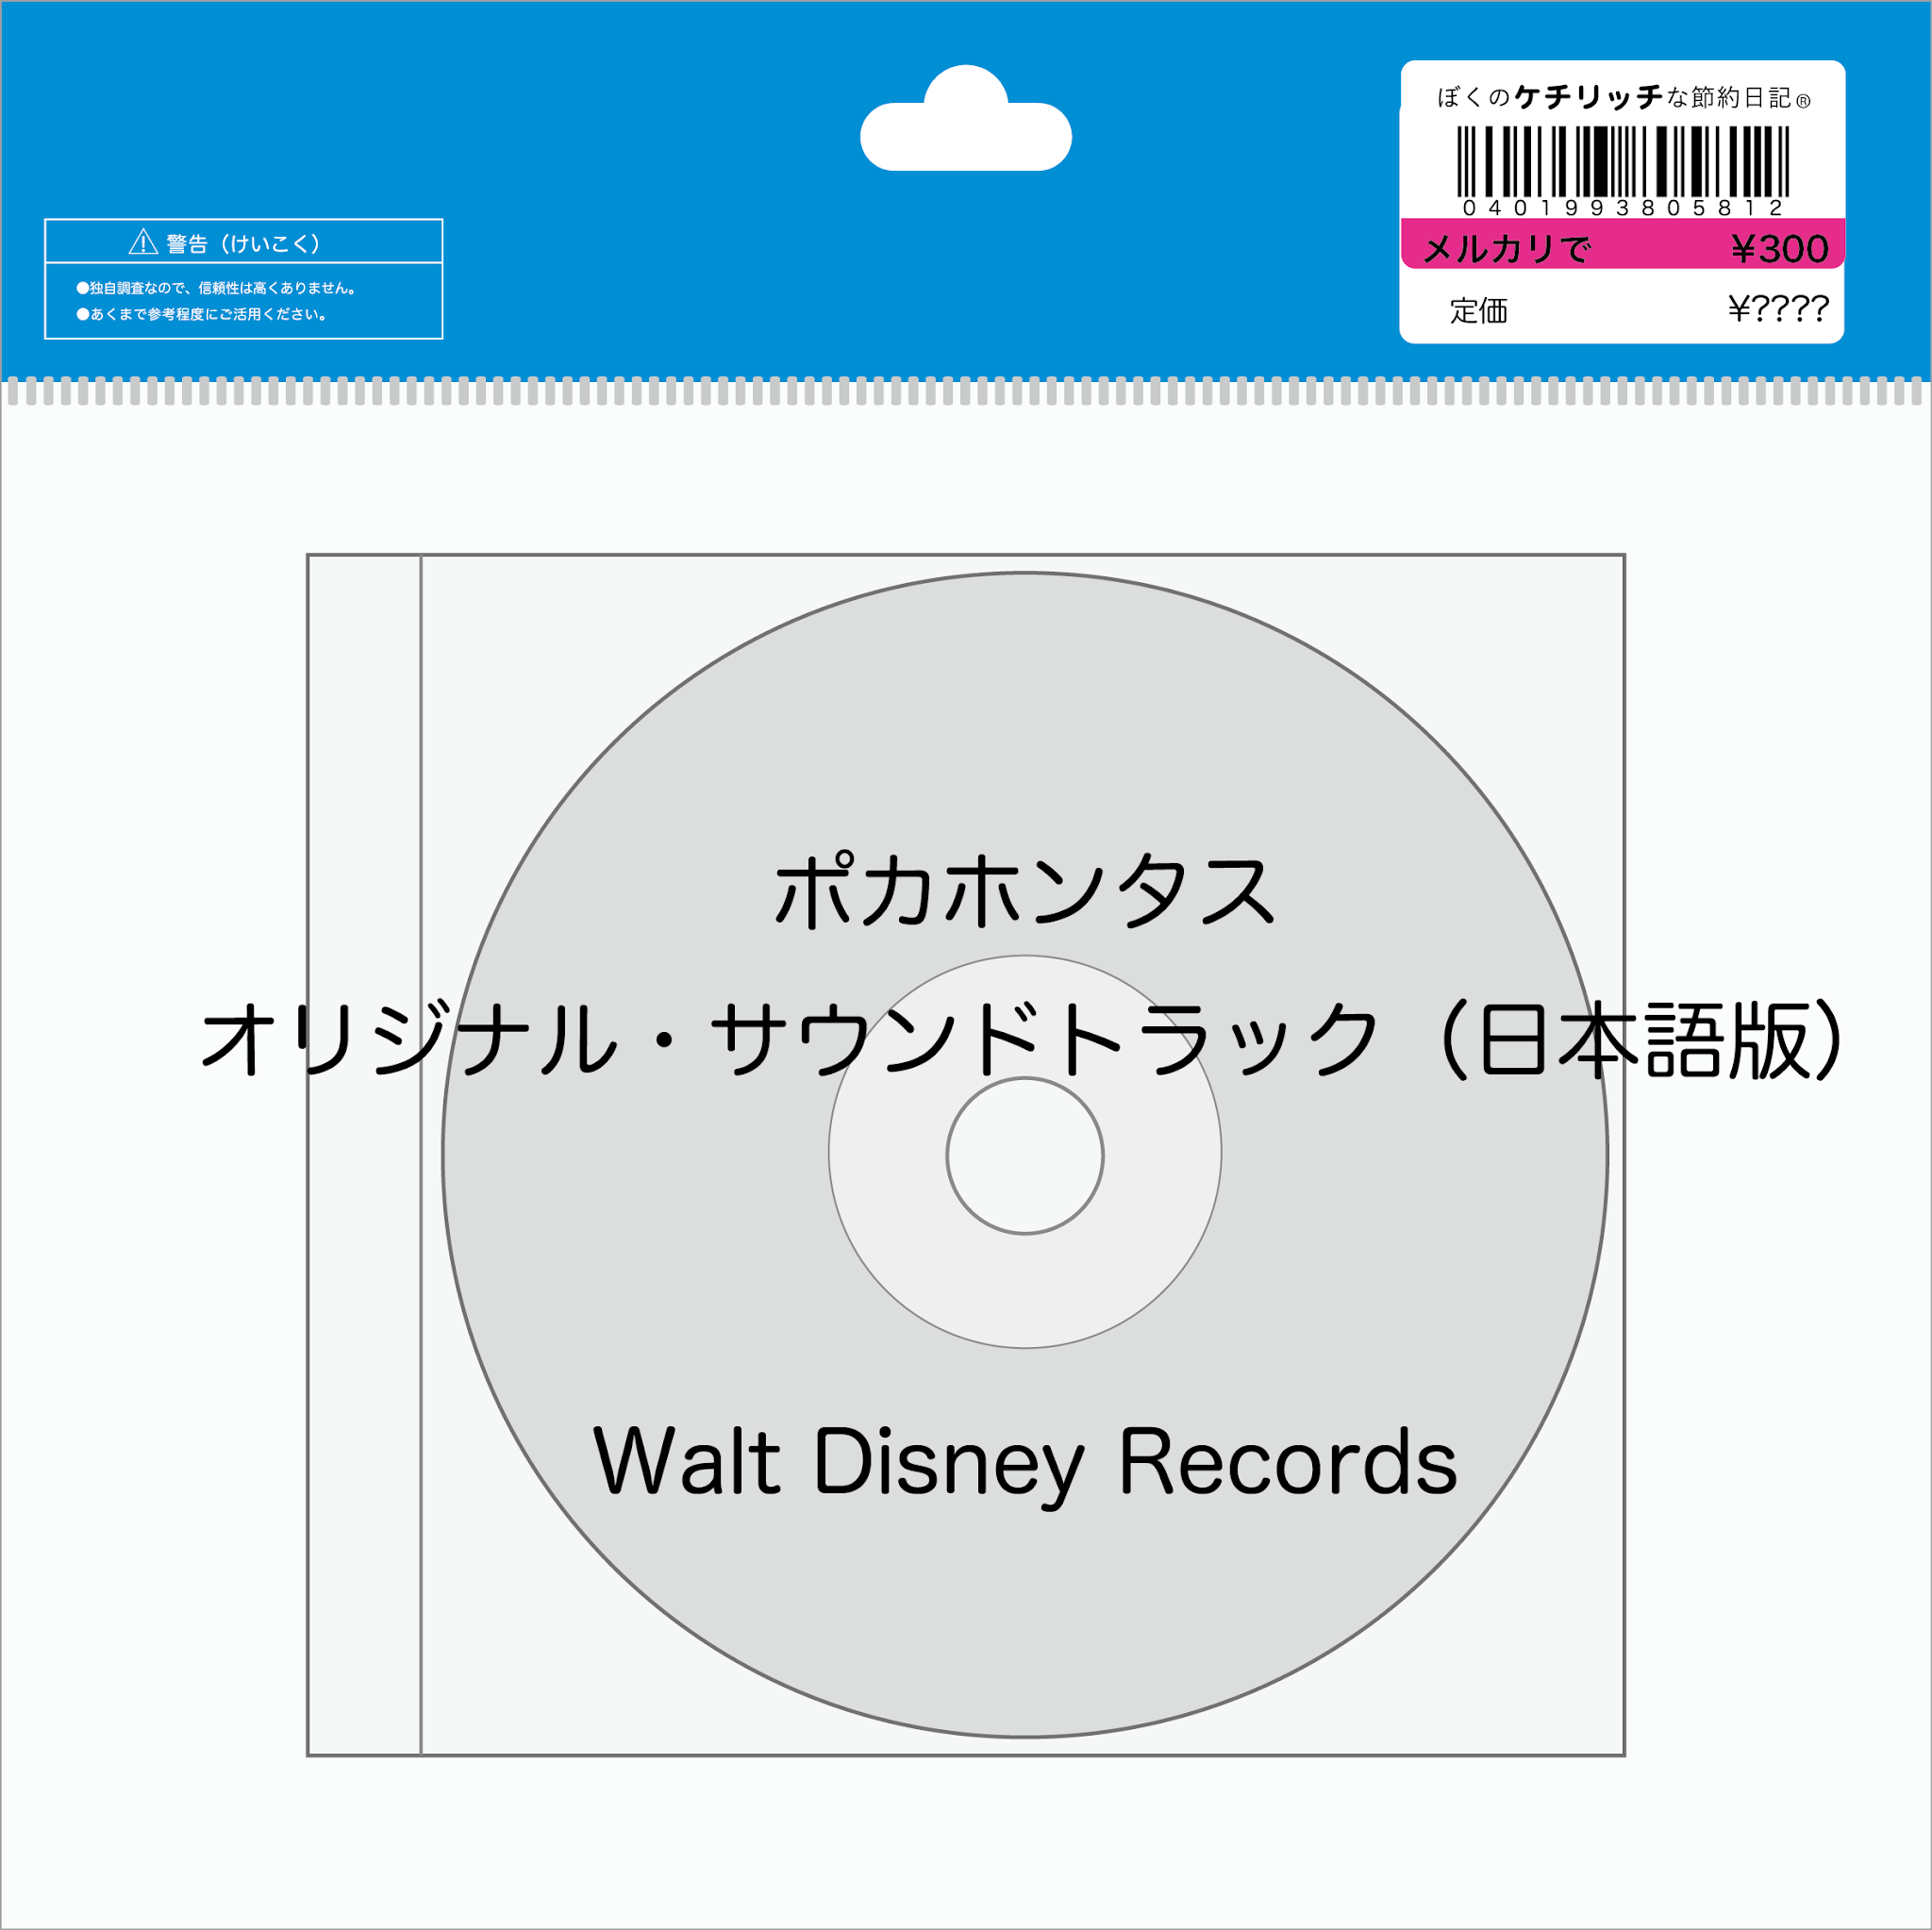 ディズニーのcd 映画サントラ ポカホンタス オリジナル サウンドトラック 日本語版 を買ってみた ぼくのケチリッチな節約日記